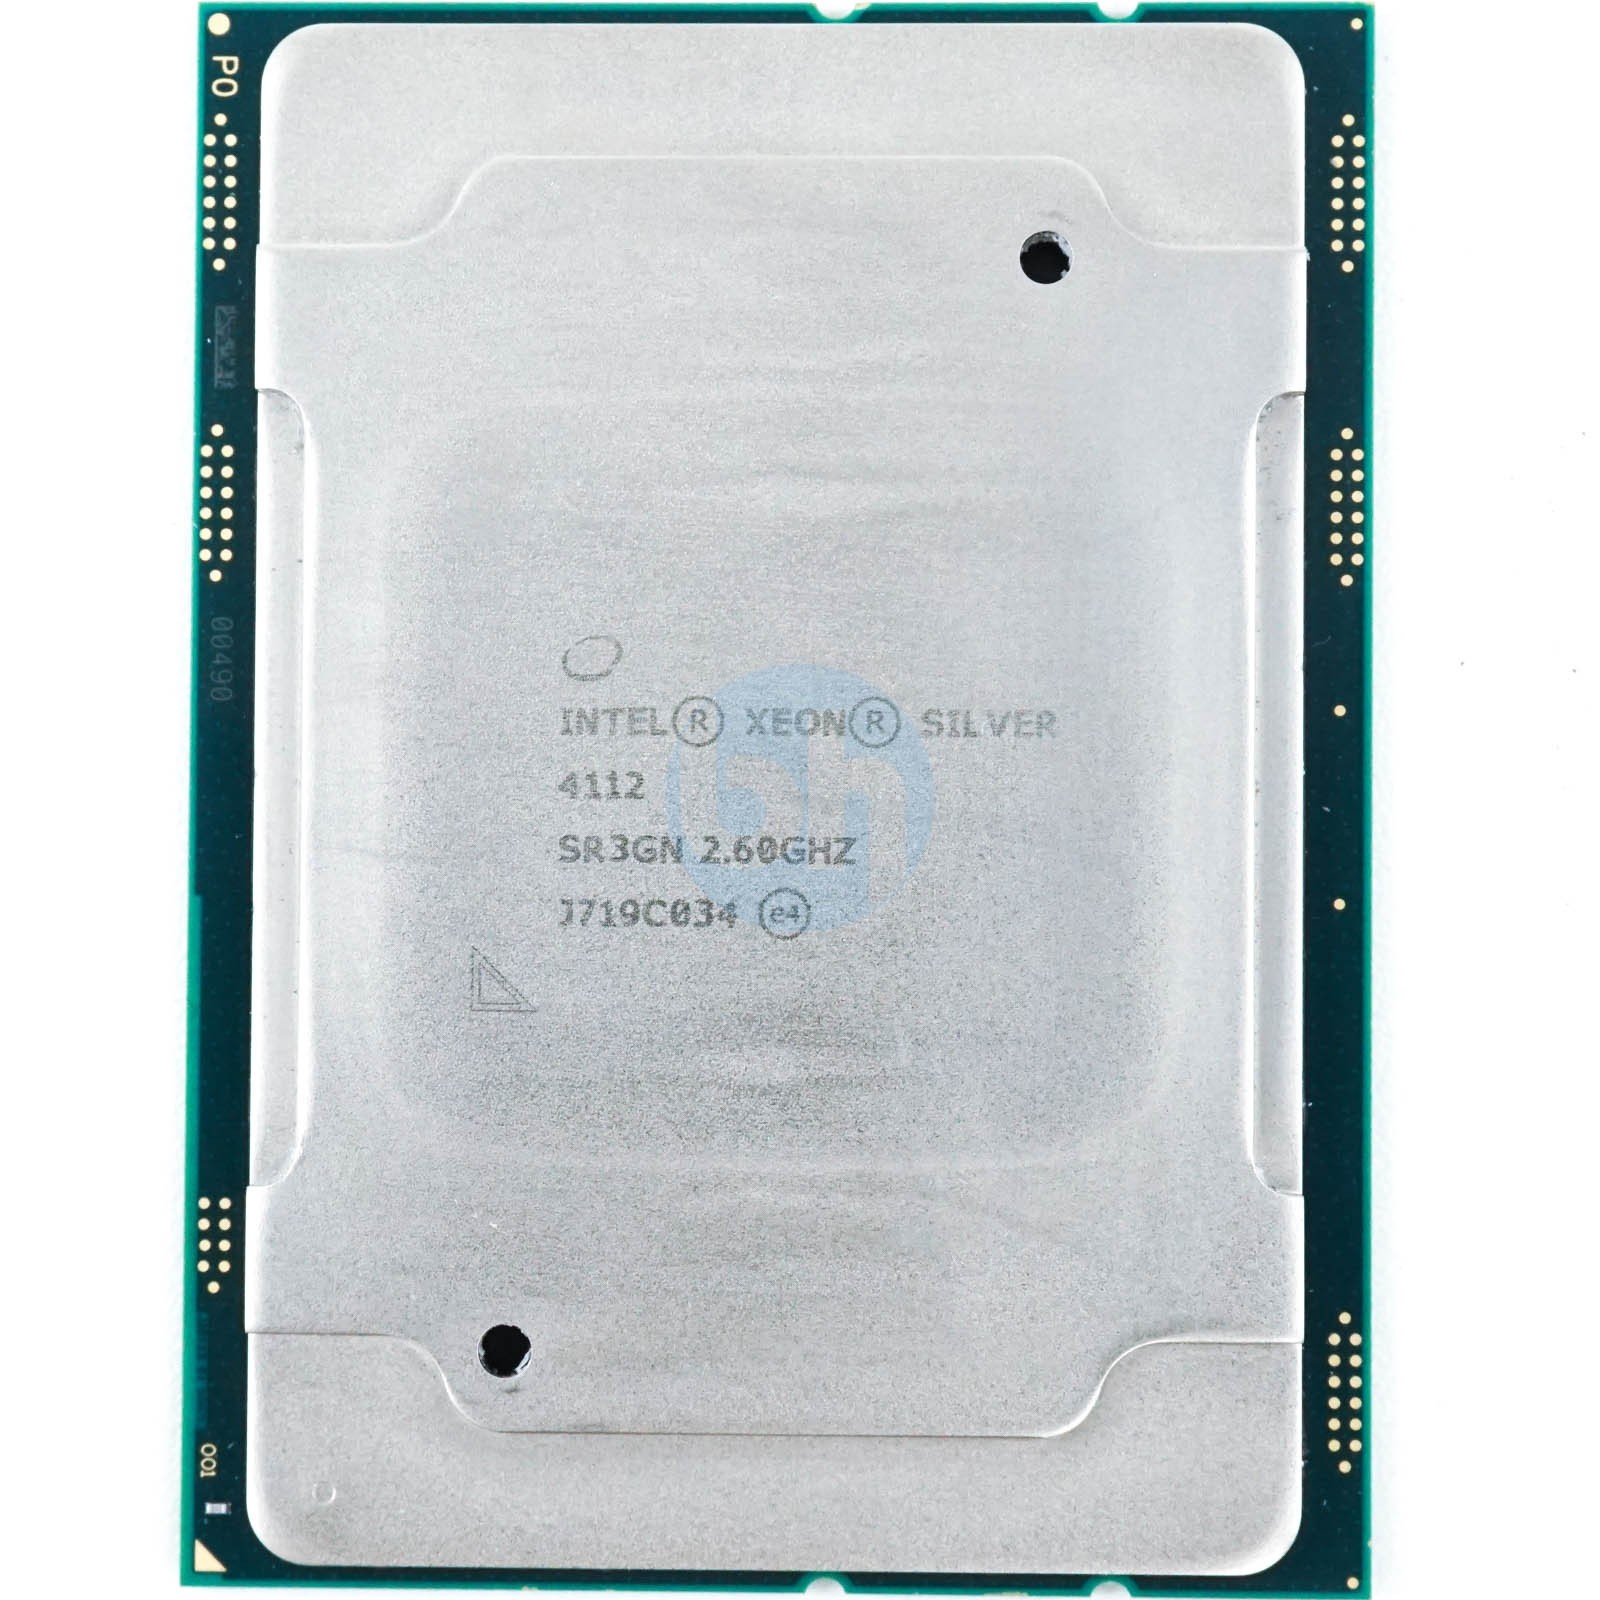 SR3GN Intel Xeon Silver 4112 (SR3GN) 2.60GHz 4-Core LGA3647 85W 8.25MB CPU